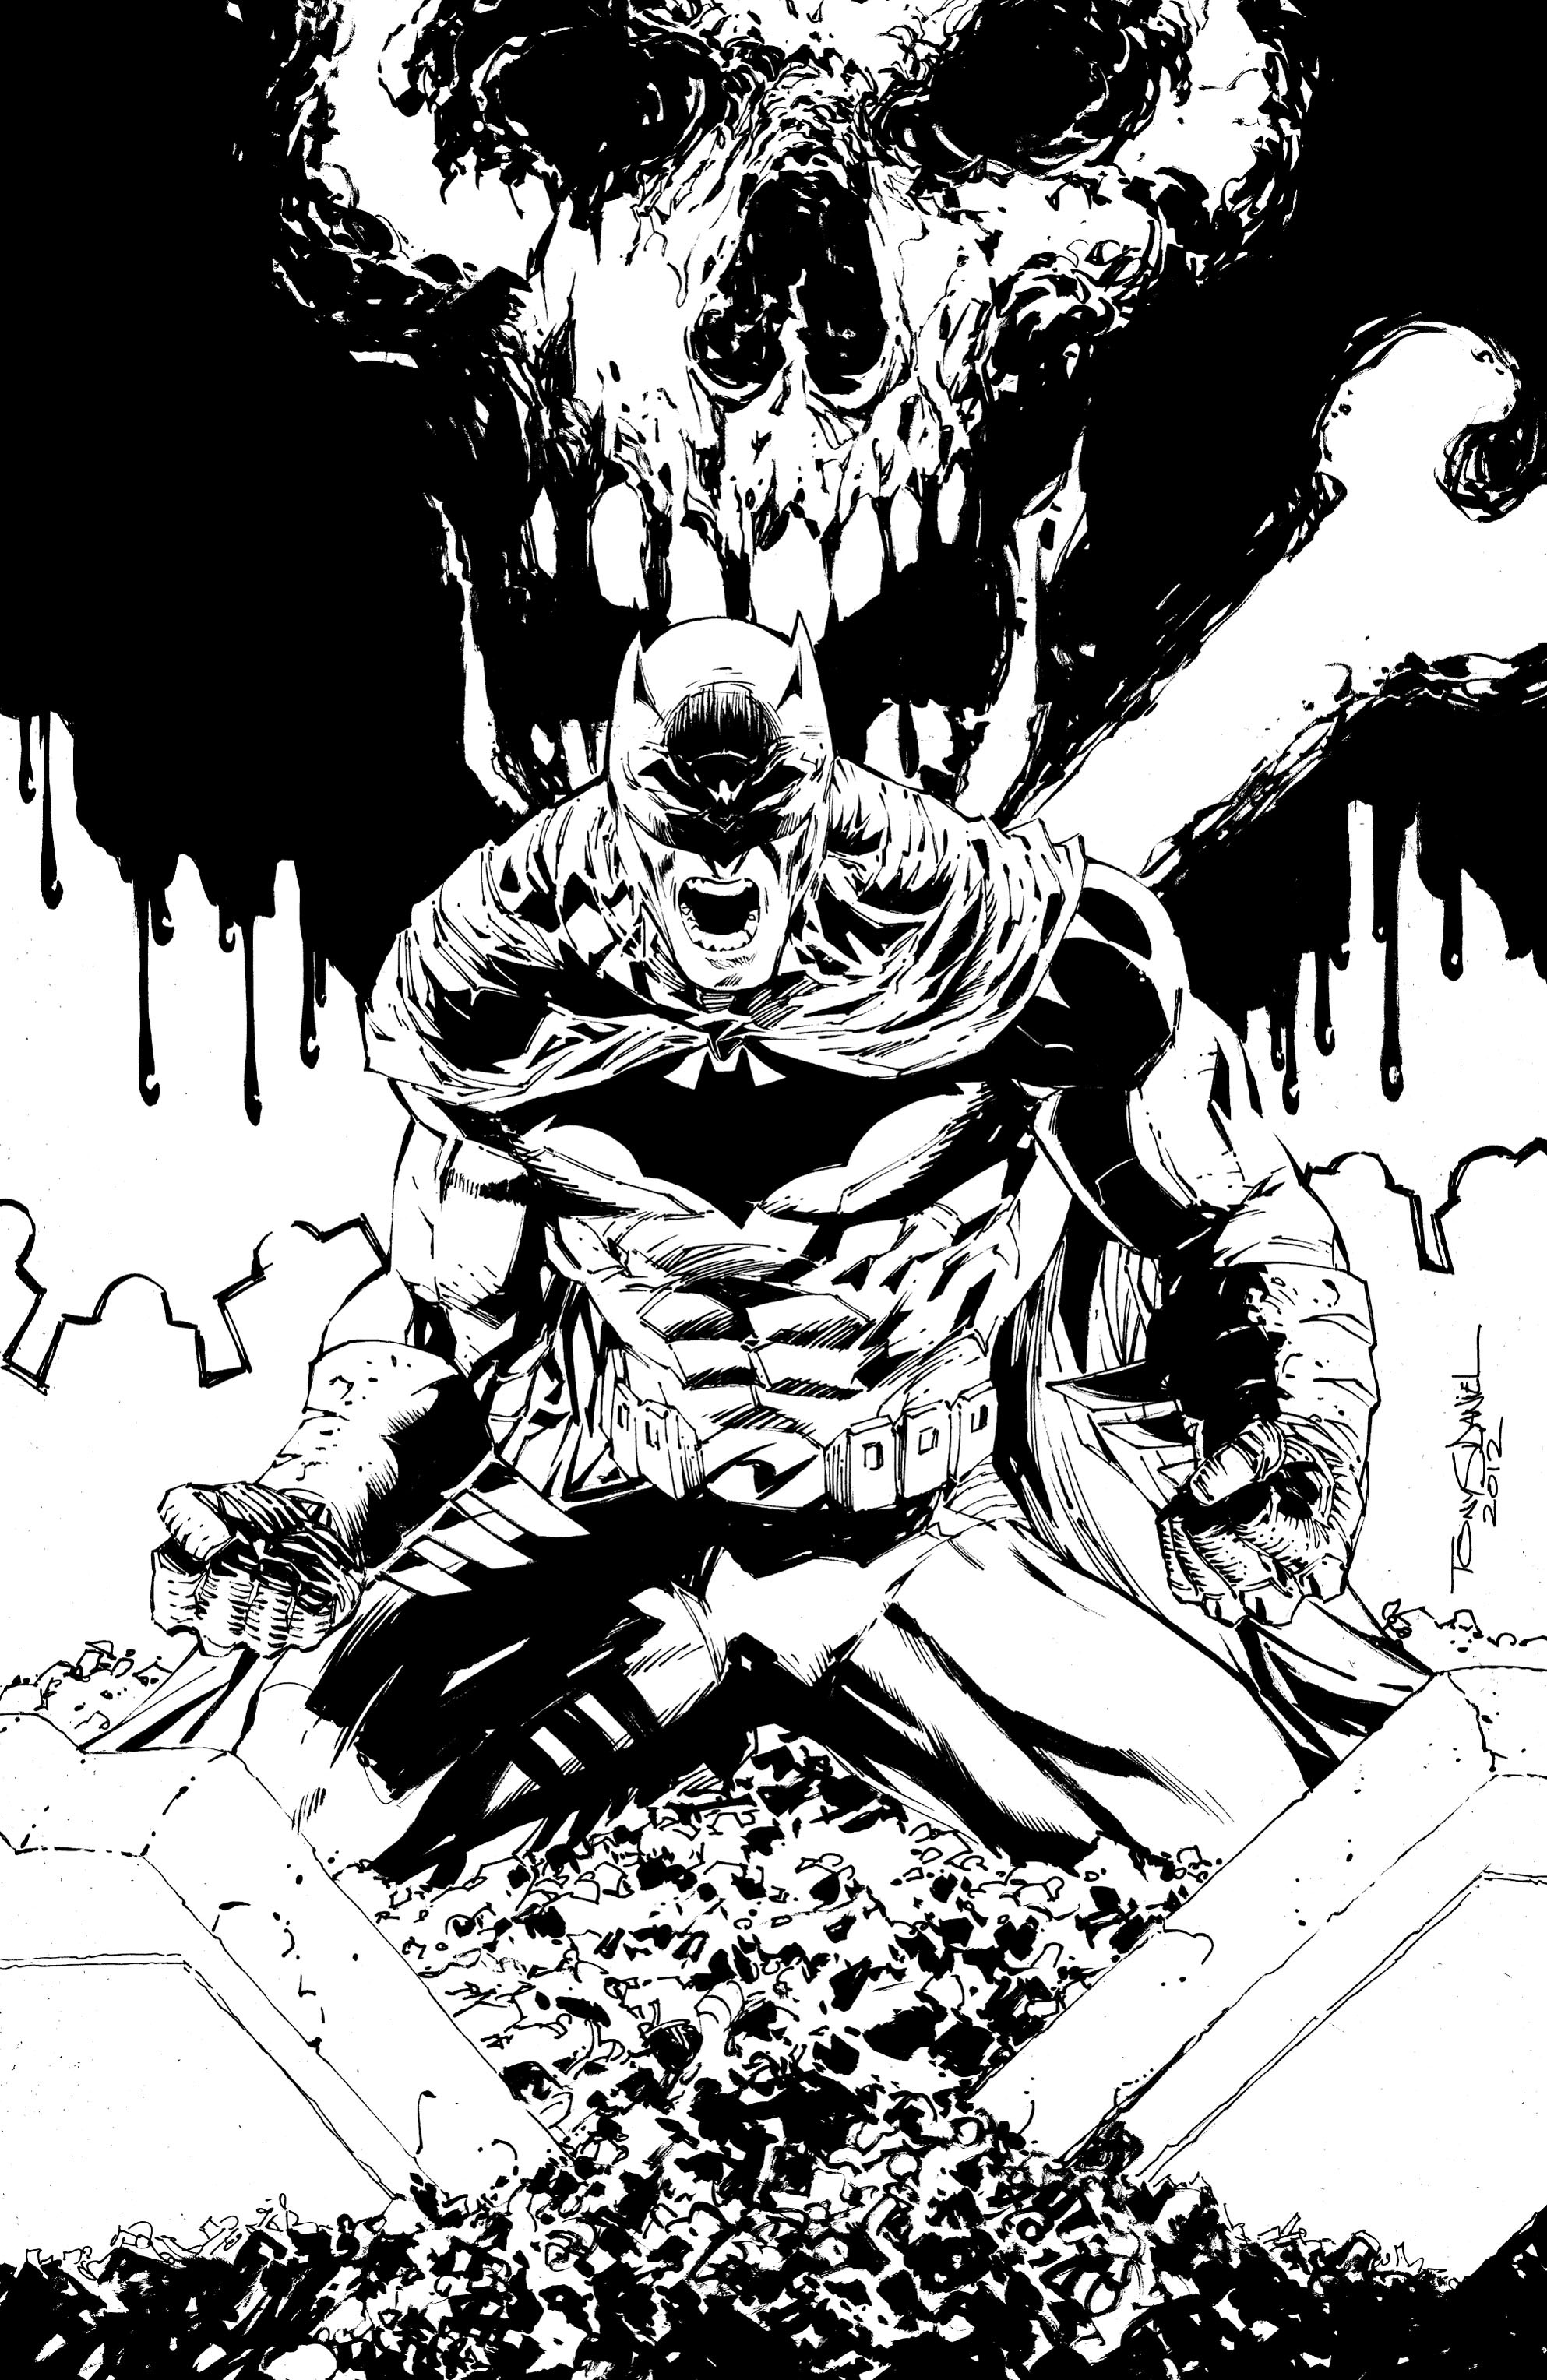 Read online Batman: Detective Comics comic -  Issue # TPB 2 - 47